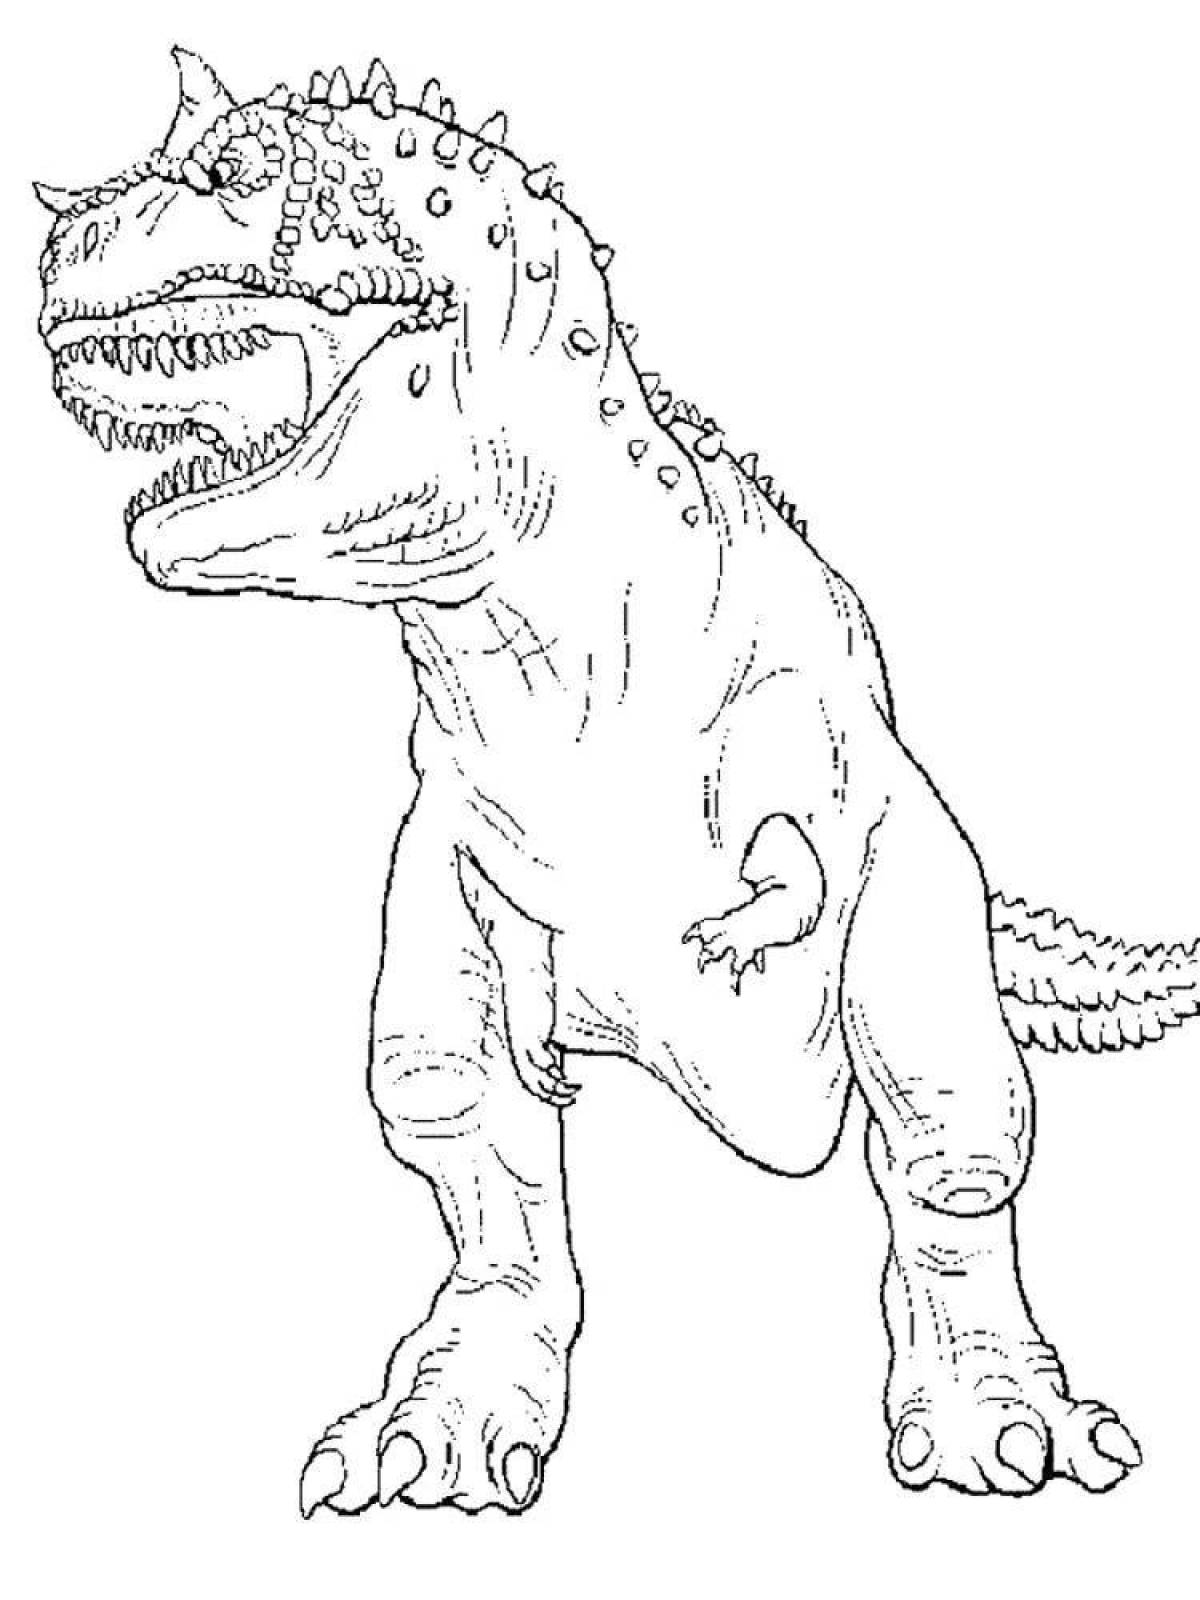 Инновационная раскраска tarbosaurus для детей